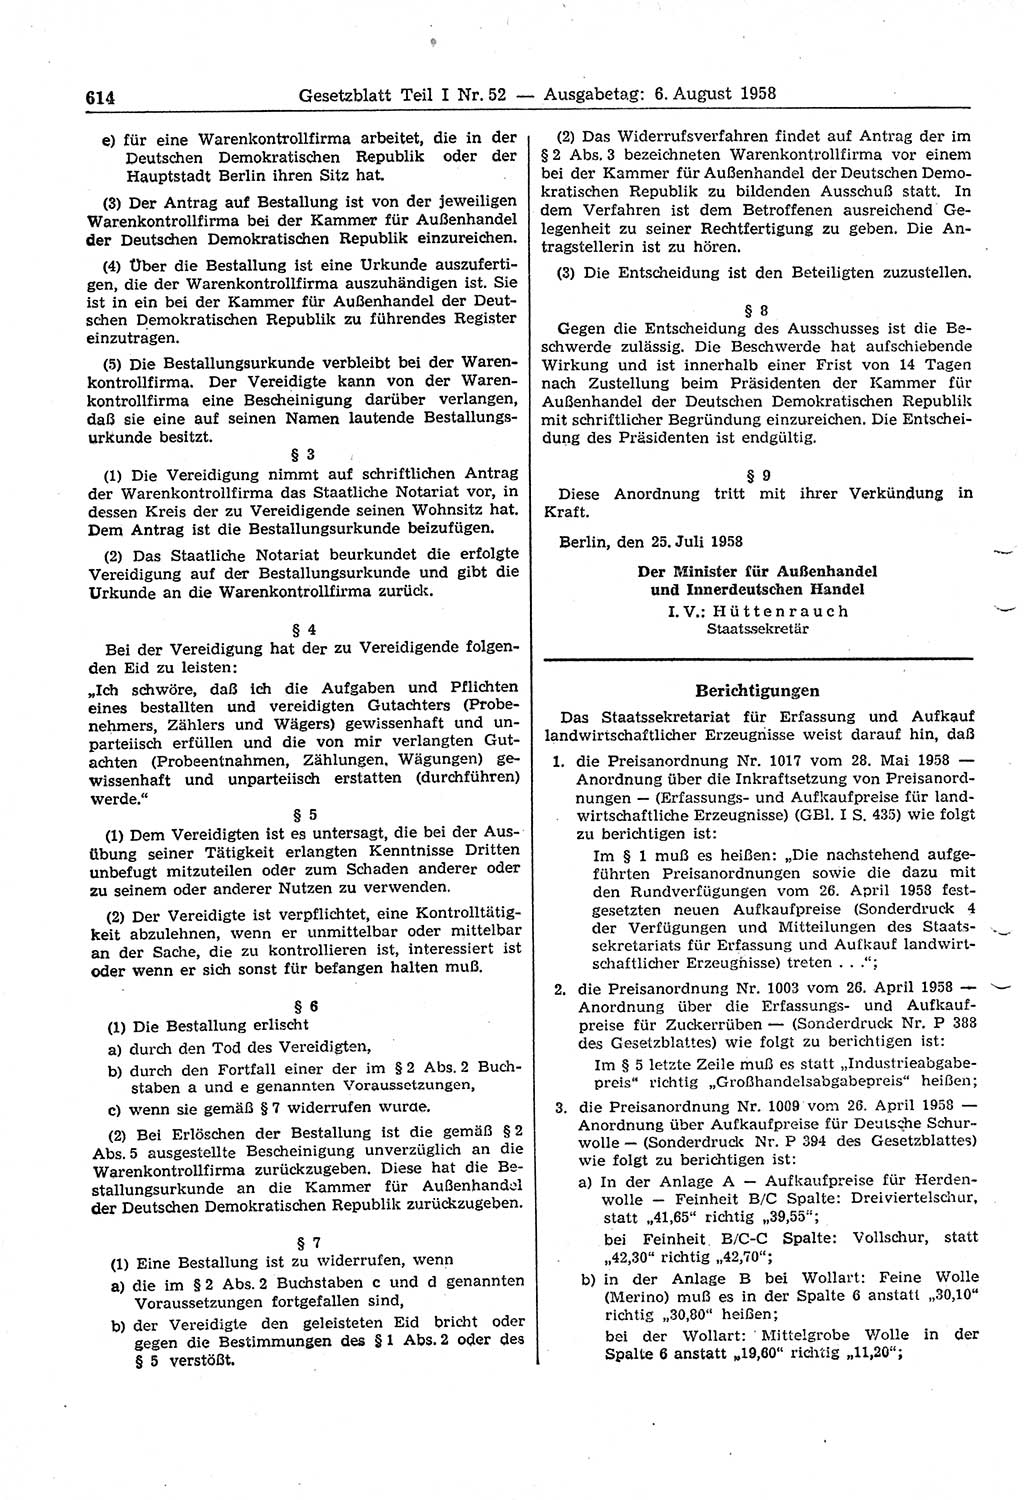 Gesetzblatt (GBl.) der Deutschen Demokratischen Republik (DDR) Teil Ⅰ 1958, Seite 614 (GBl. DDR Ⅰ 1958, S. 614)